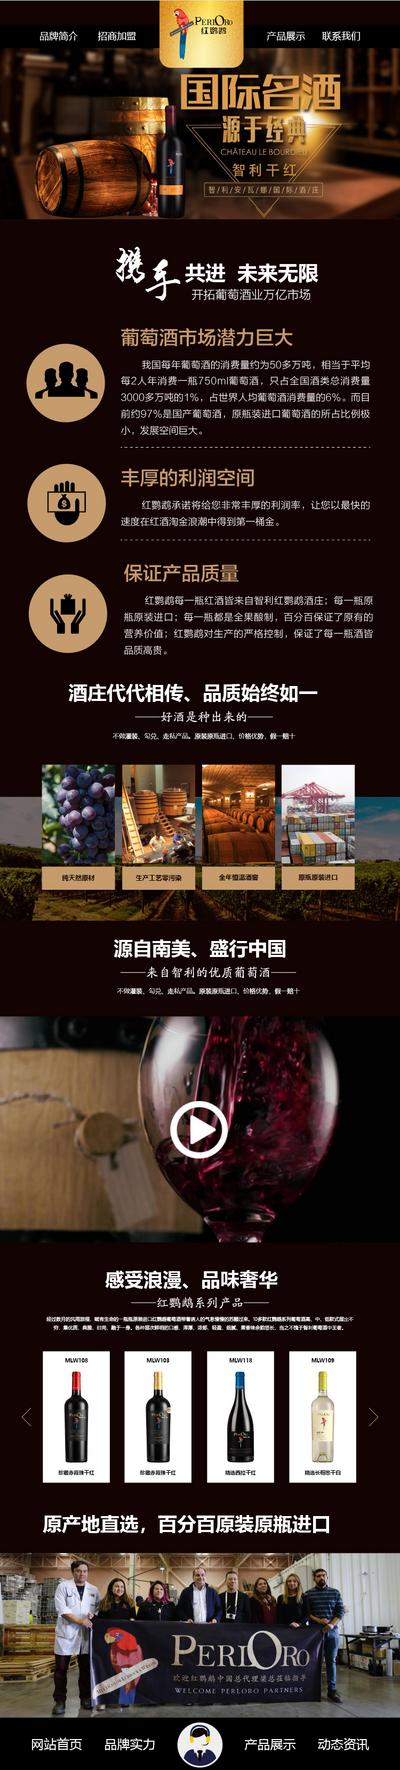 南门网 手机 WEB 网站 红酒 品牌 专题